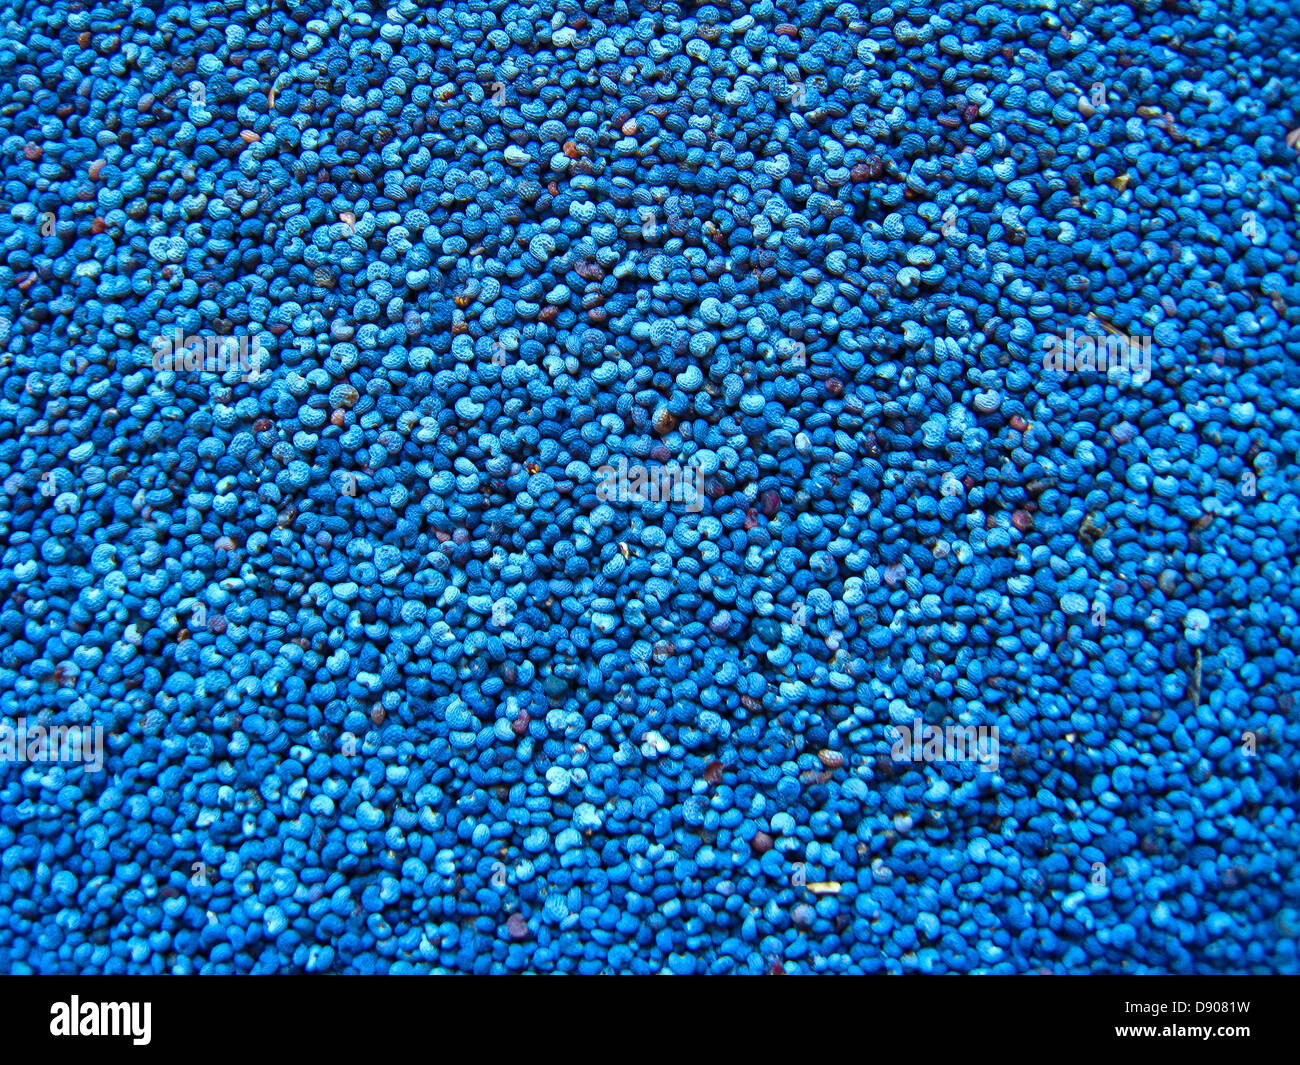 Fond bleu foncé à partir de grains d'un coquelicot Banque D'Images